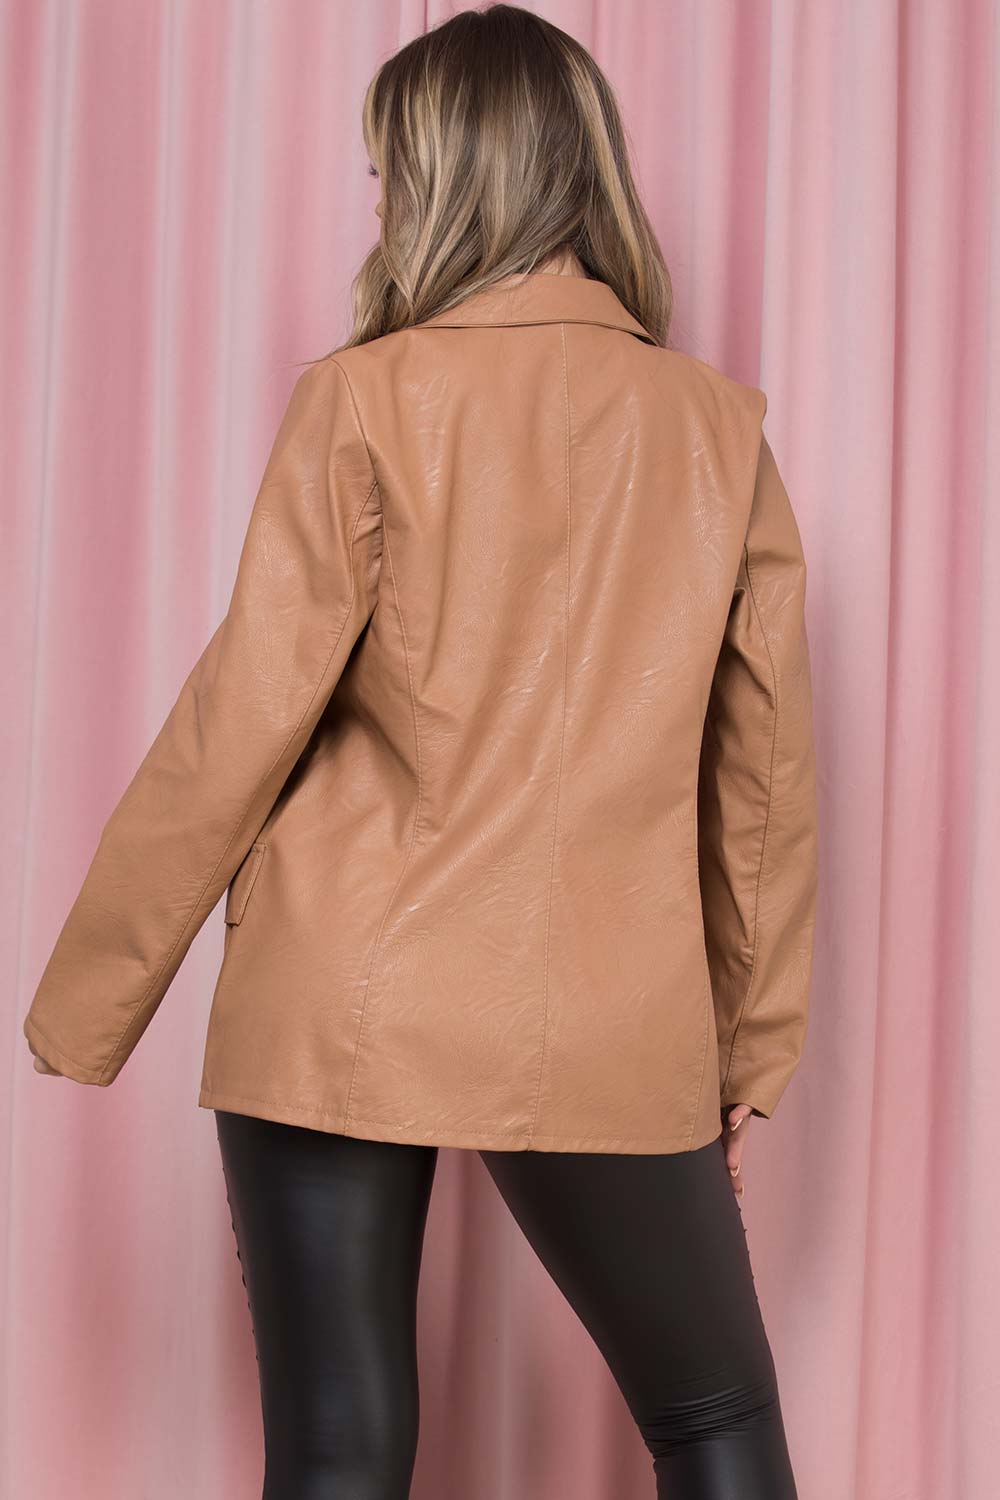 pu leather blazer jacket womens